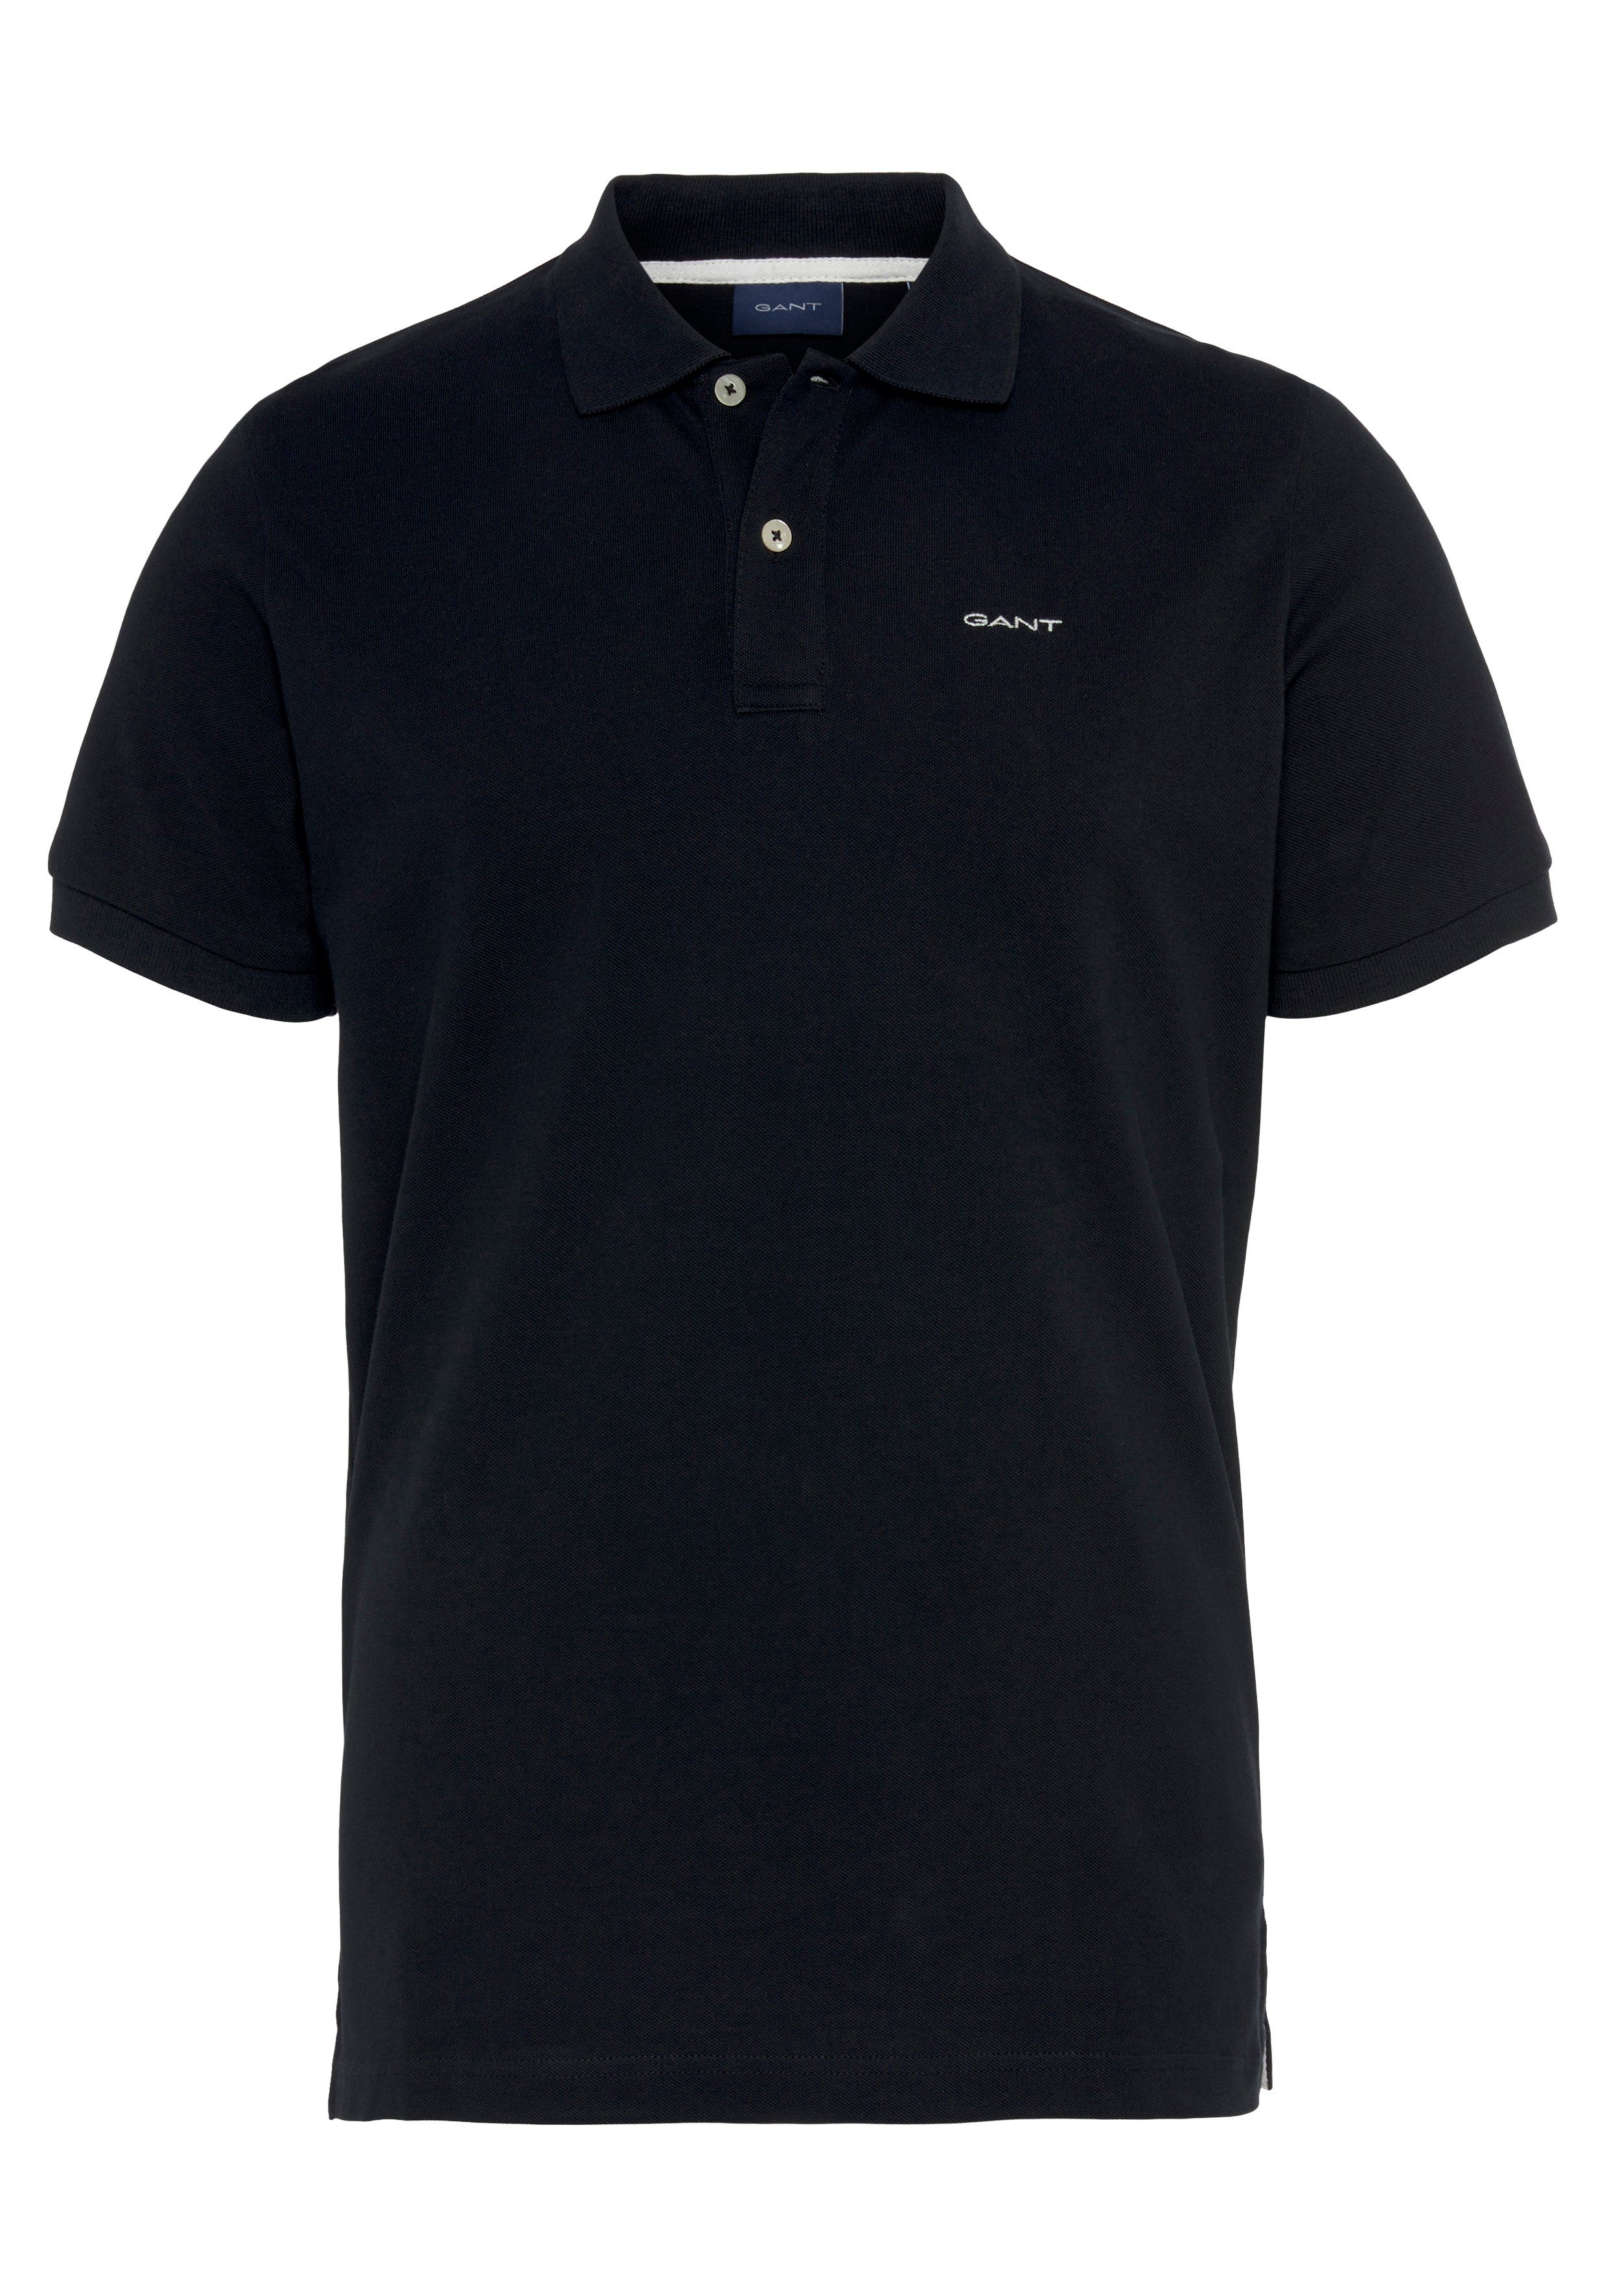 Gant Poloshirt MD. KA PIQUE RUGGER Piqué-Polo Shirt, Smart Casual, Regular Fit, Premium Qualität schwarz